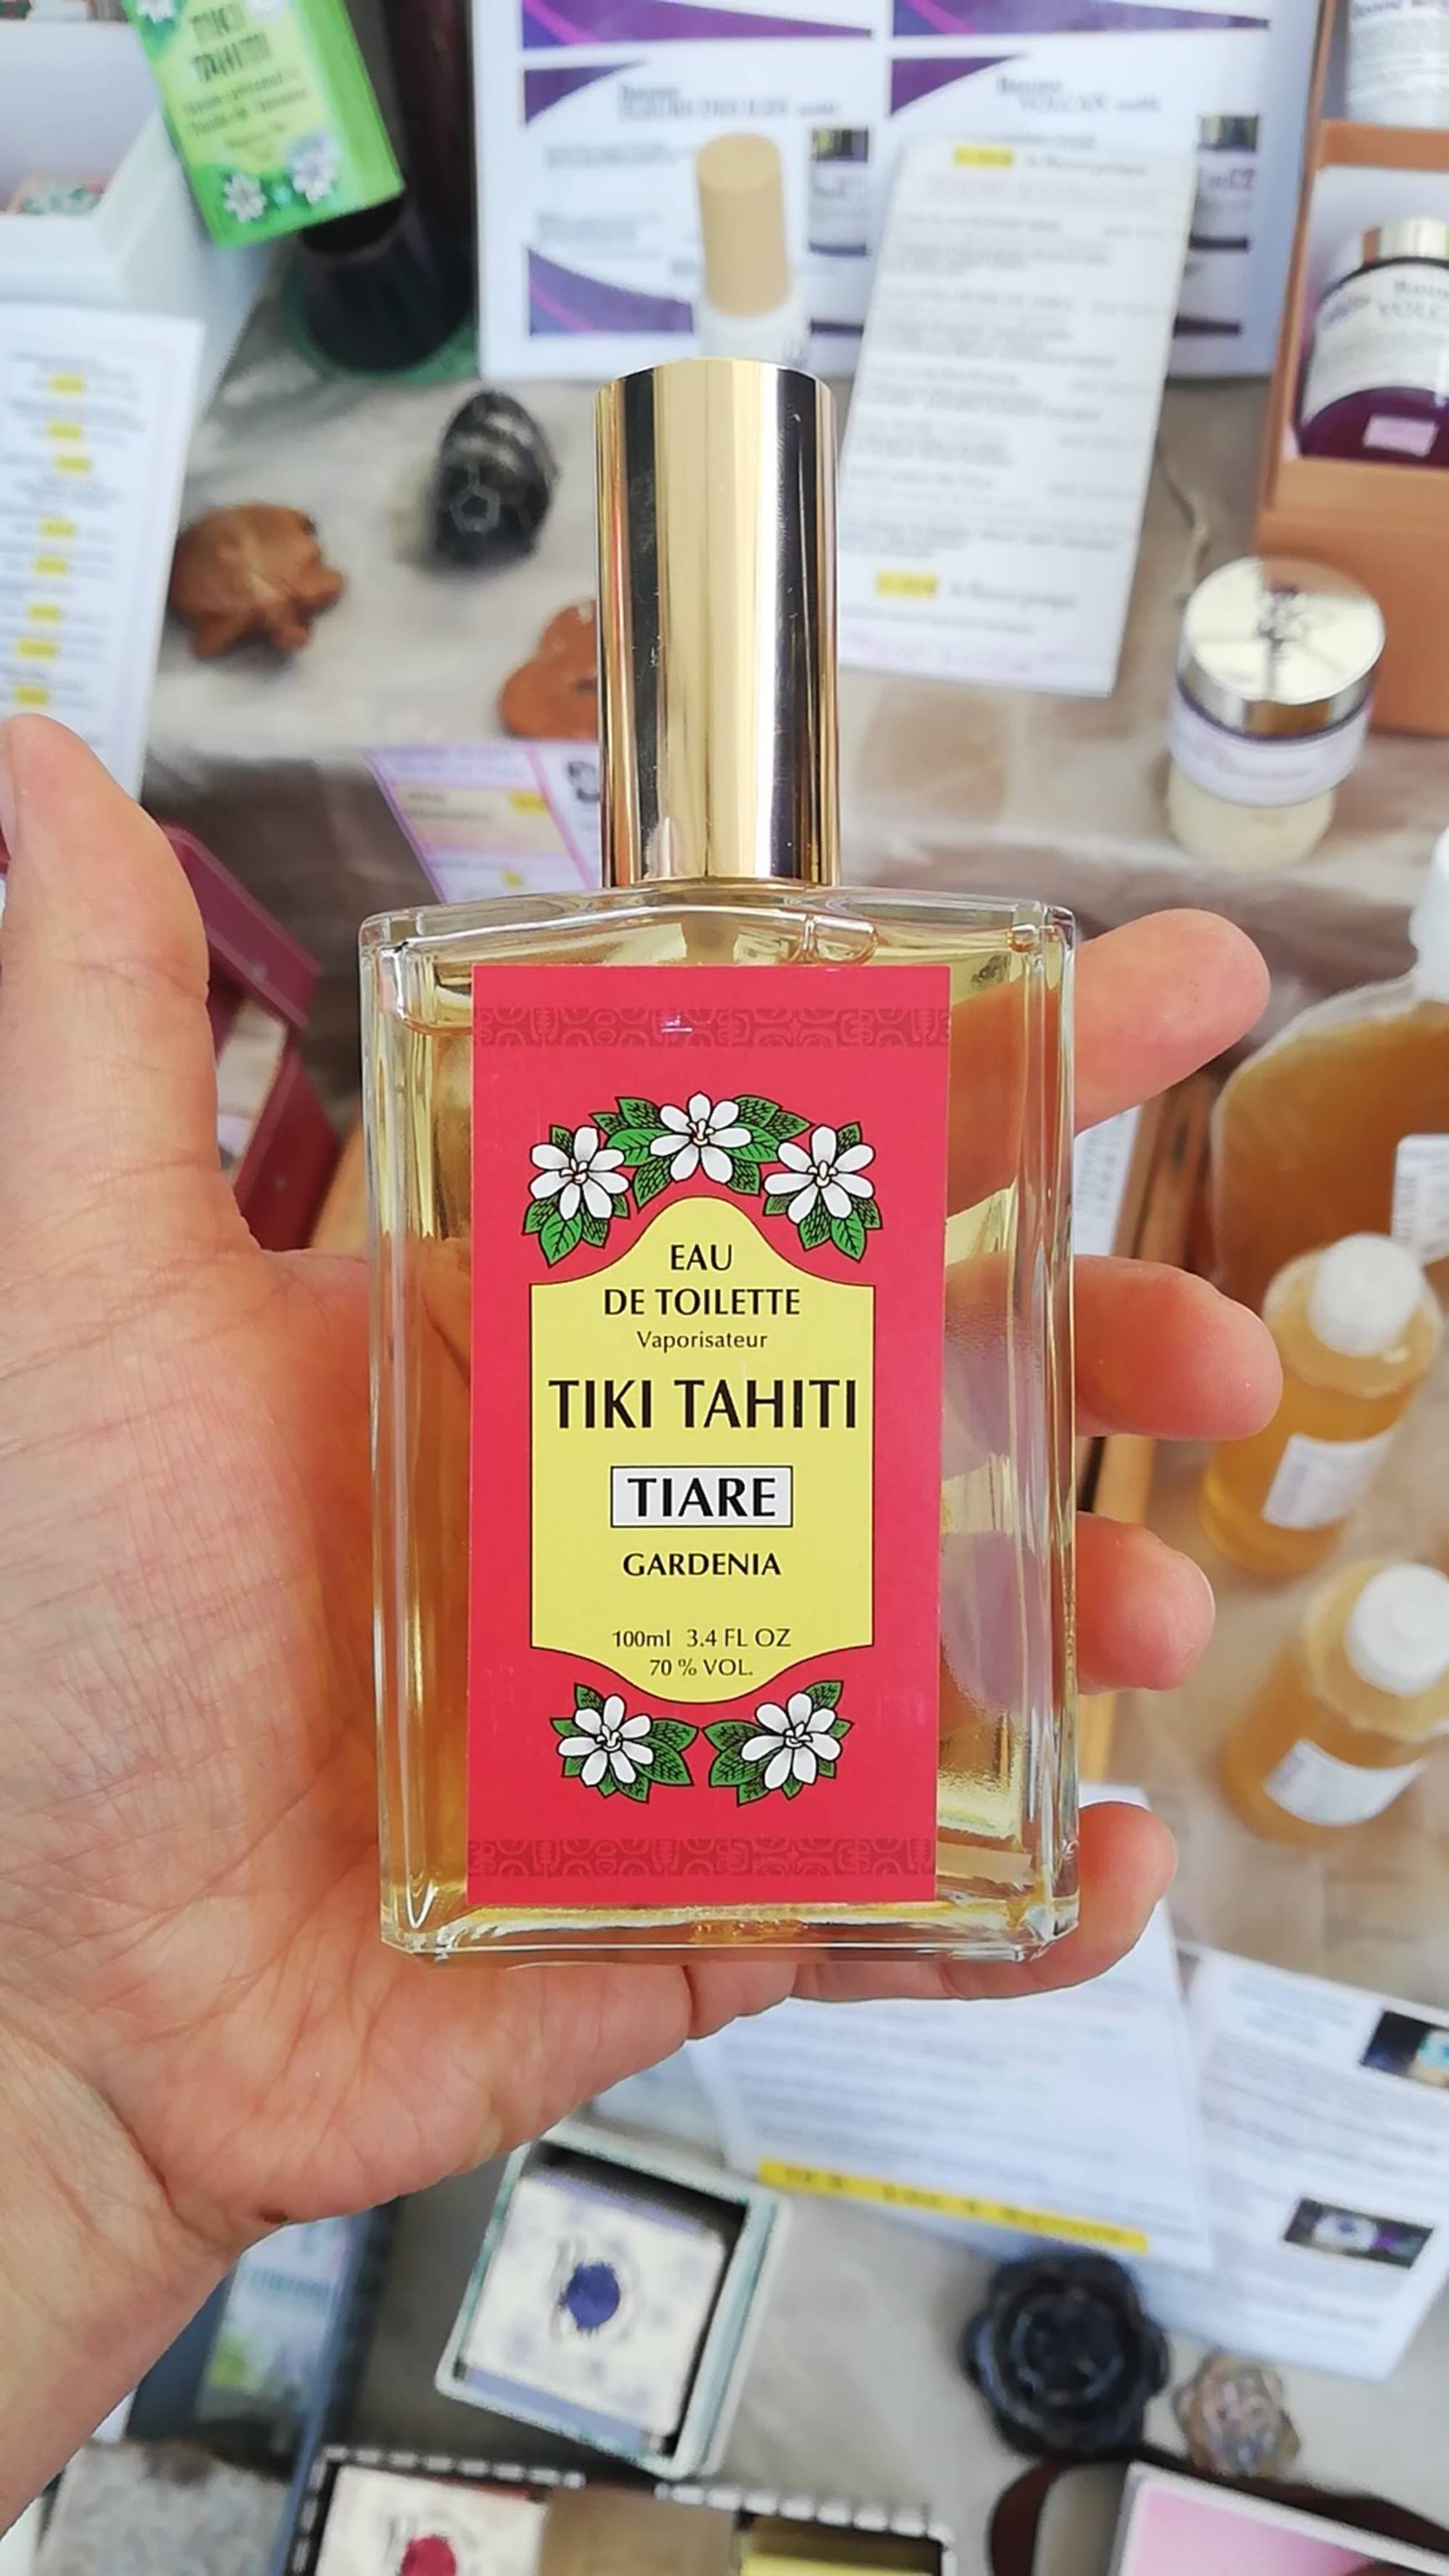 TIKI TAHITI - Tiare gardenia - Eau de toilette